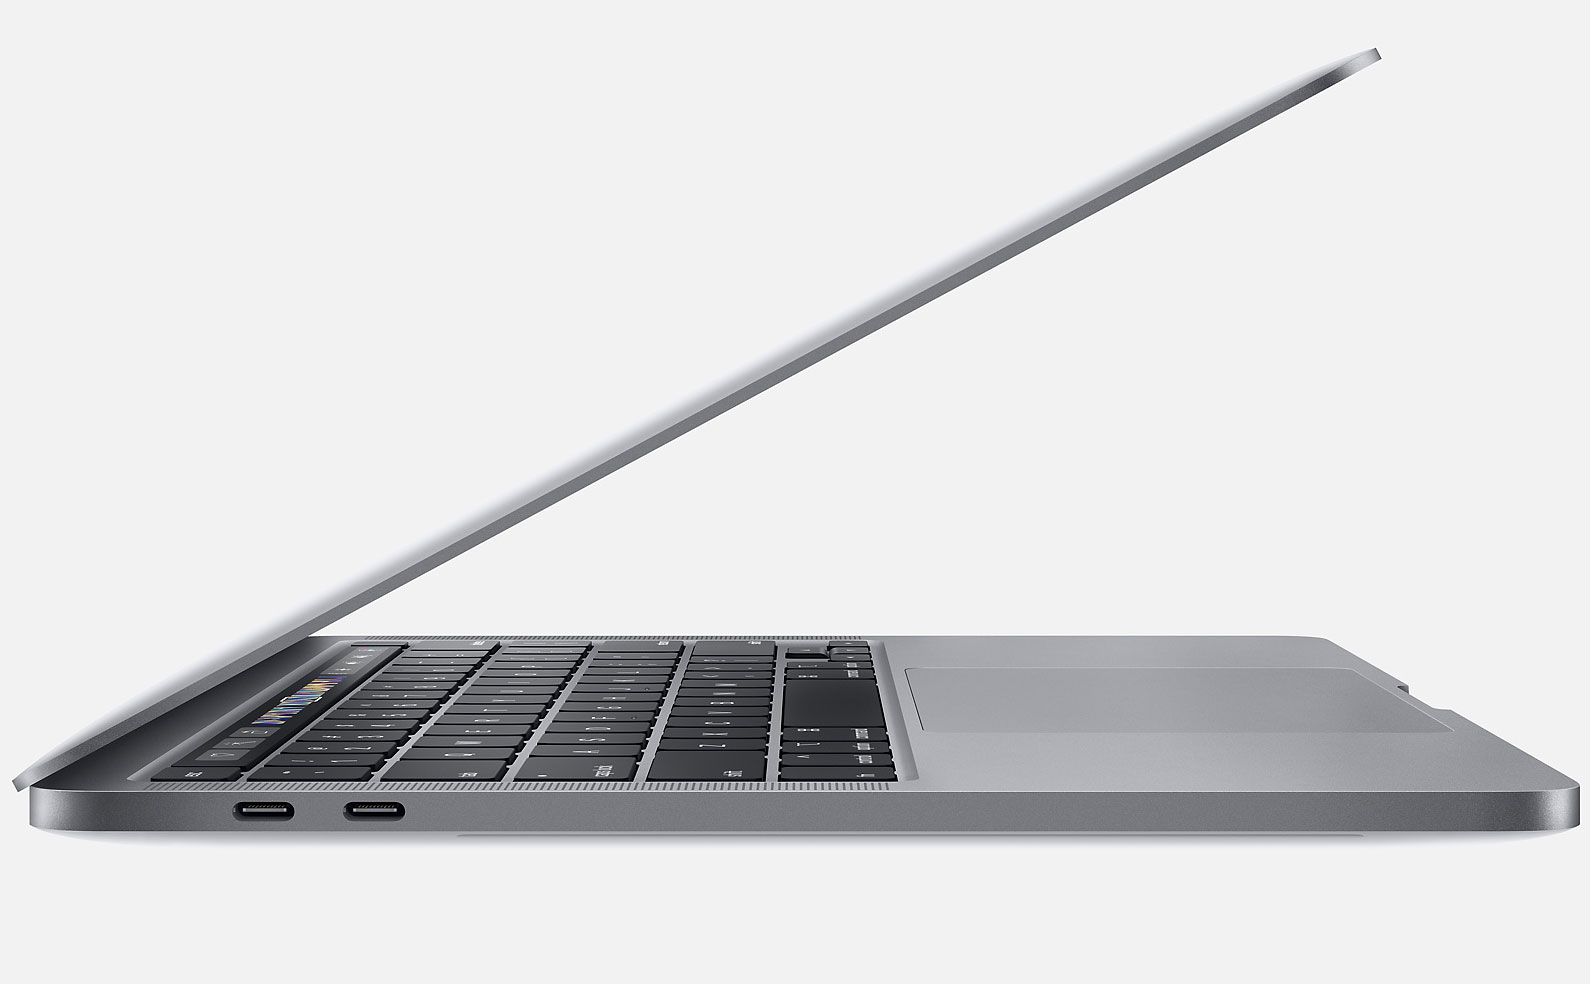 新CPU搭載!MacBook Pro 13インチ 2020が登場 - PCまなぶ